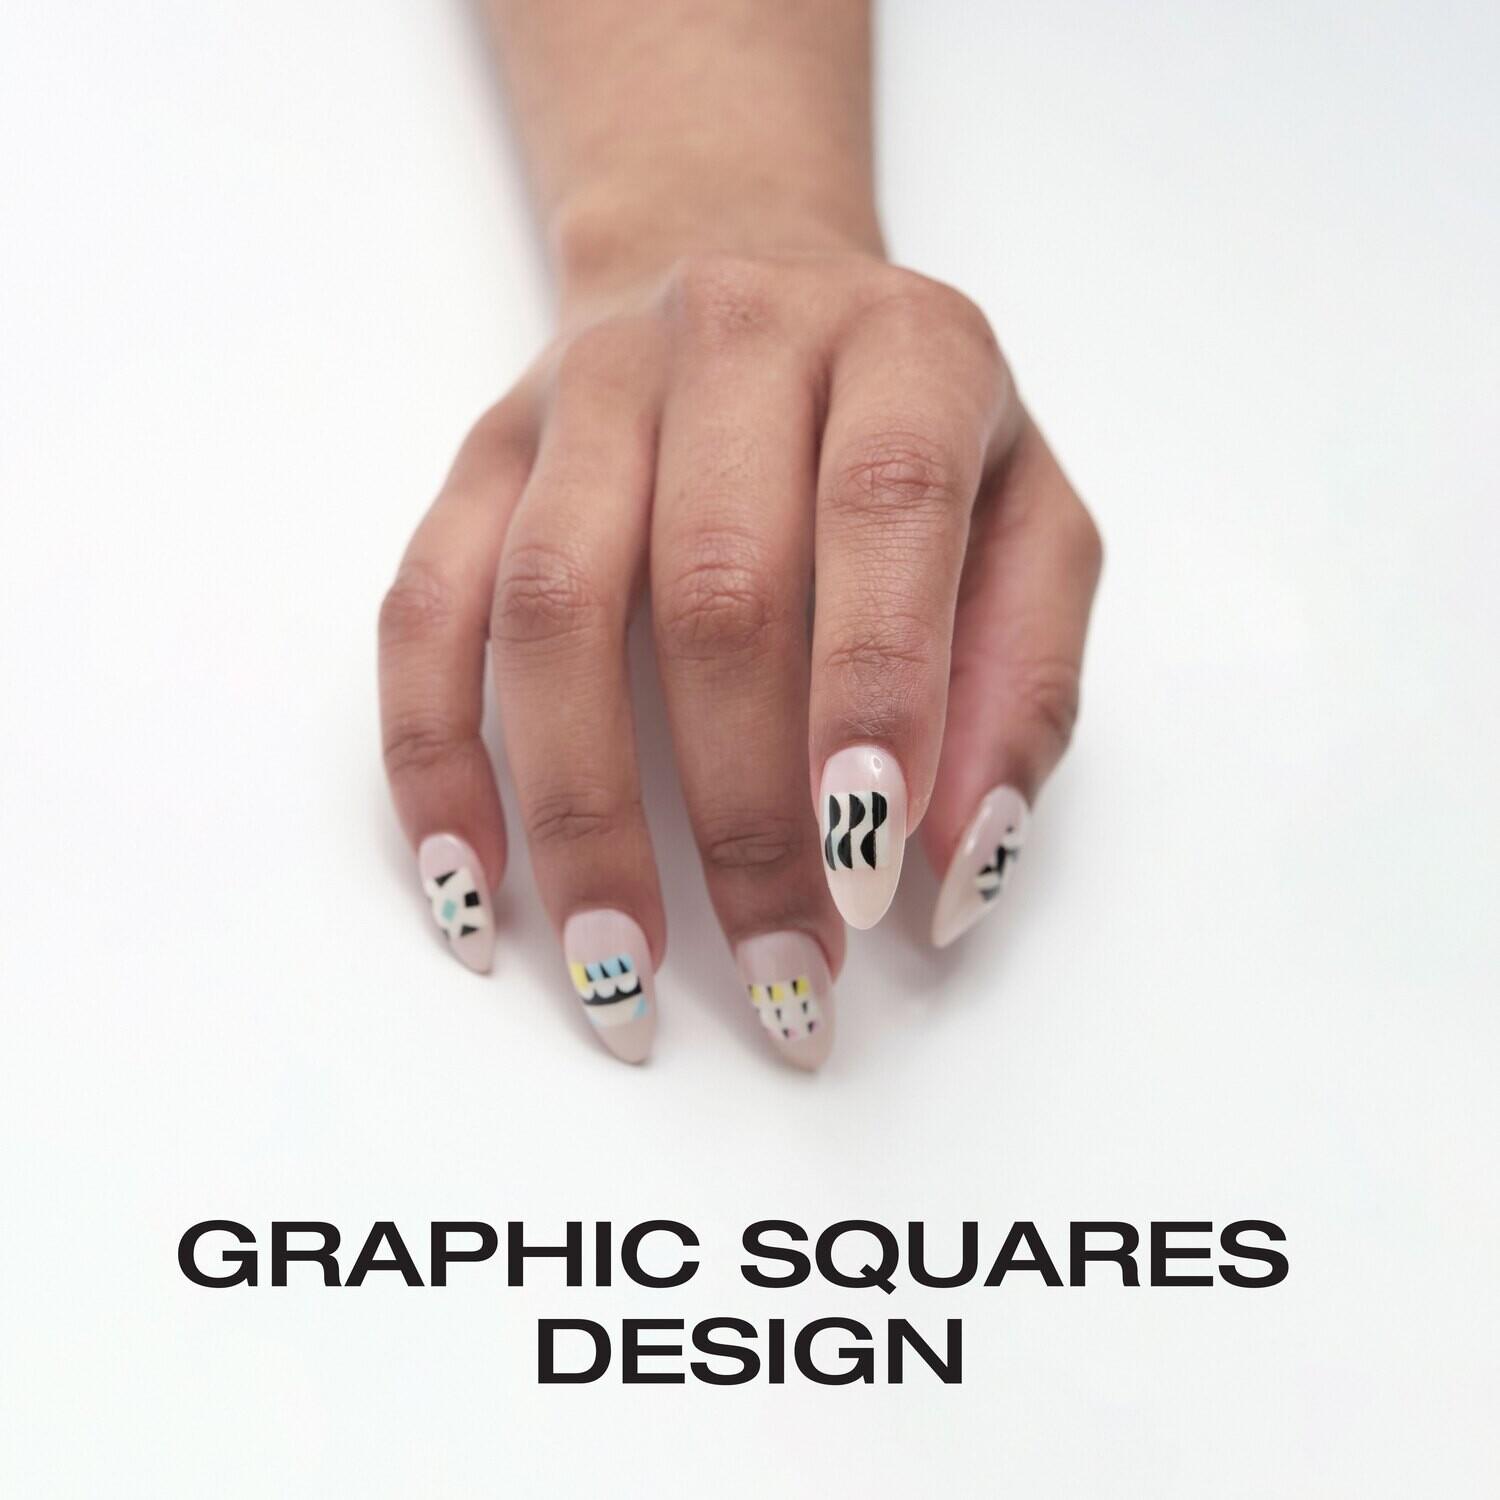 Graphic Squares Design Course